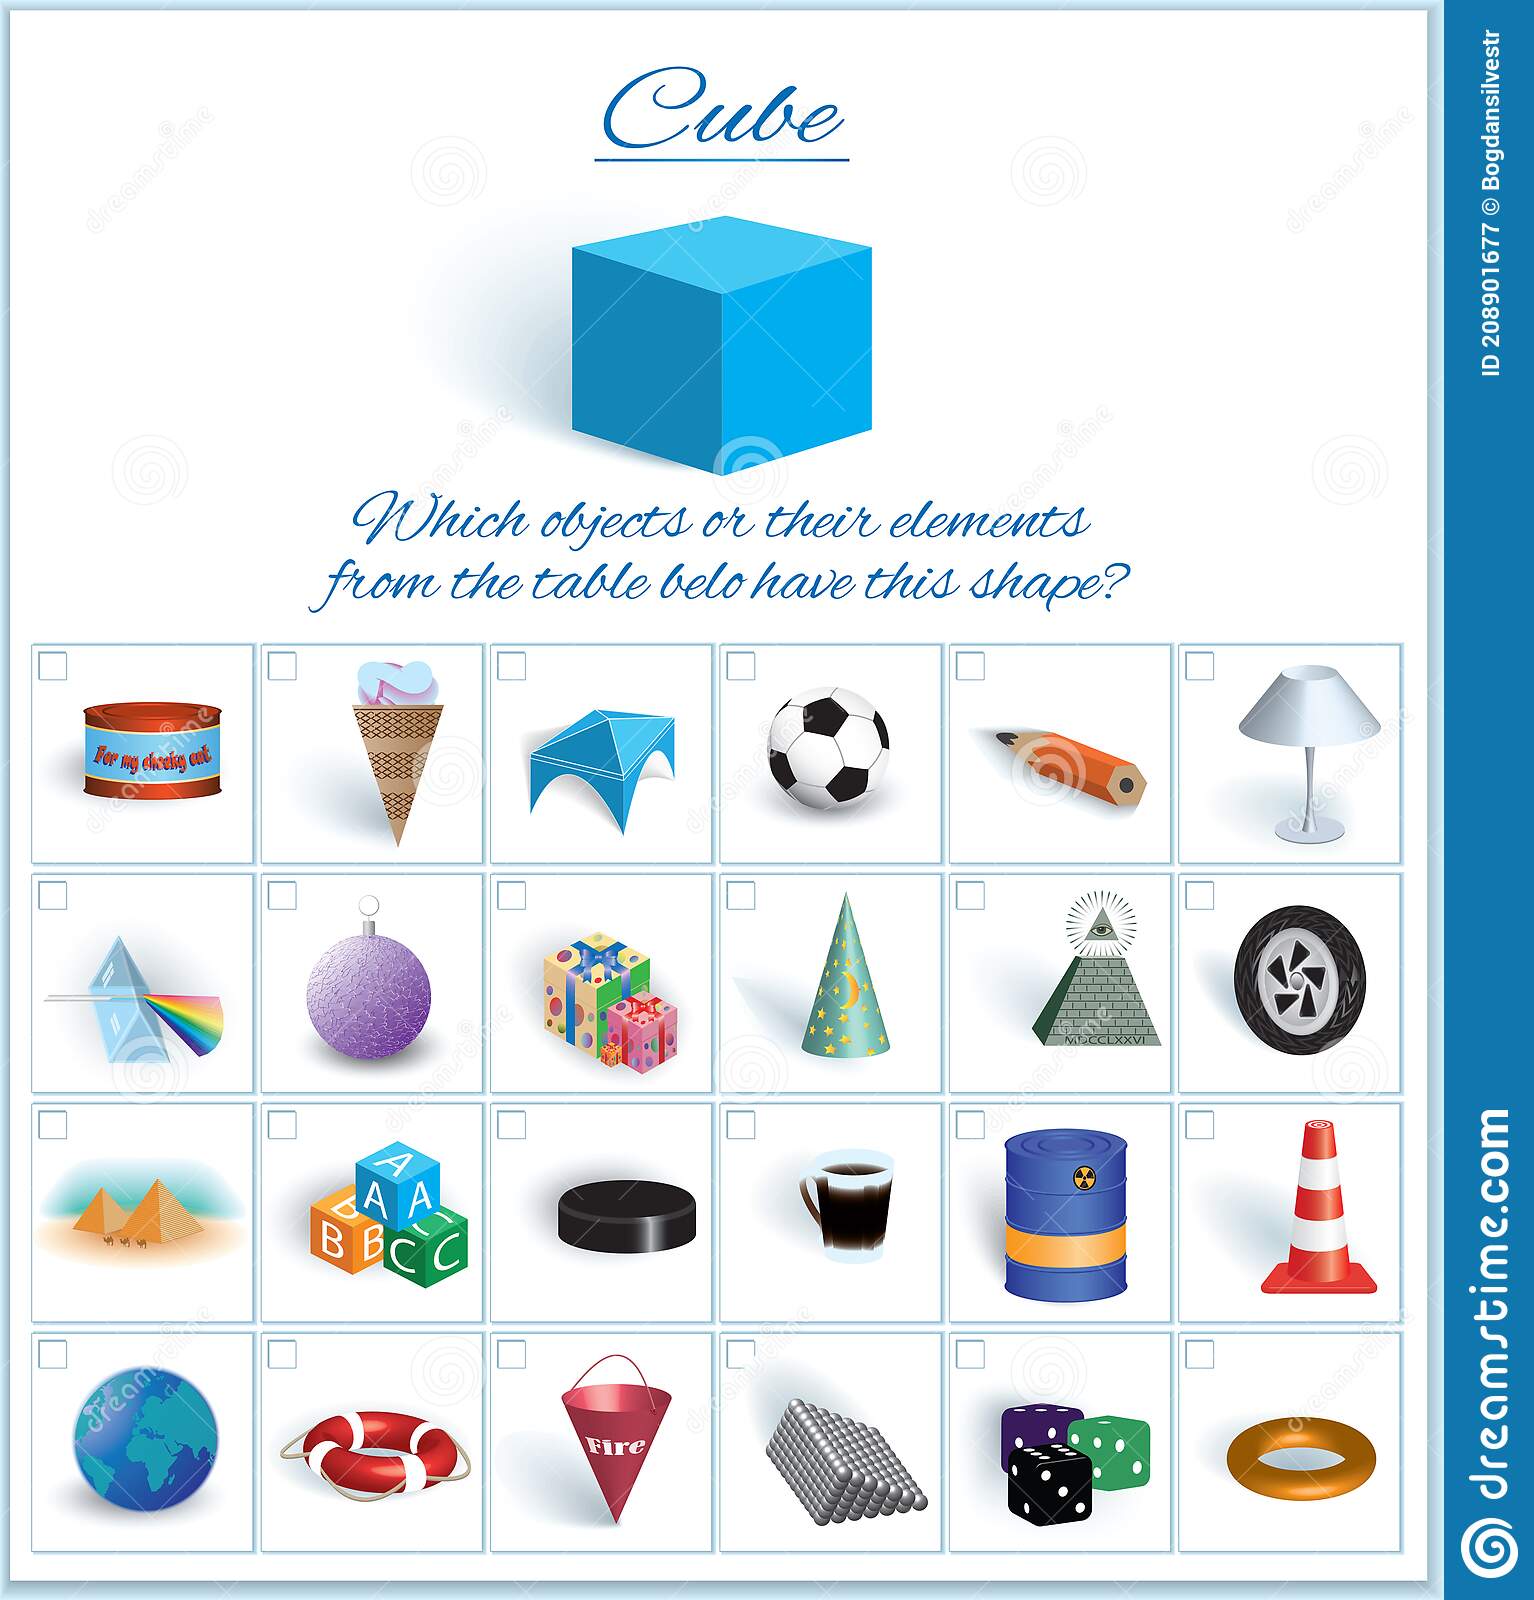 Explore os Usos e Benefícios dos Objetos em Forma de Cubo